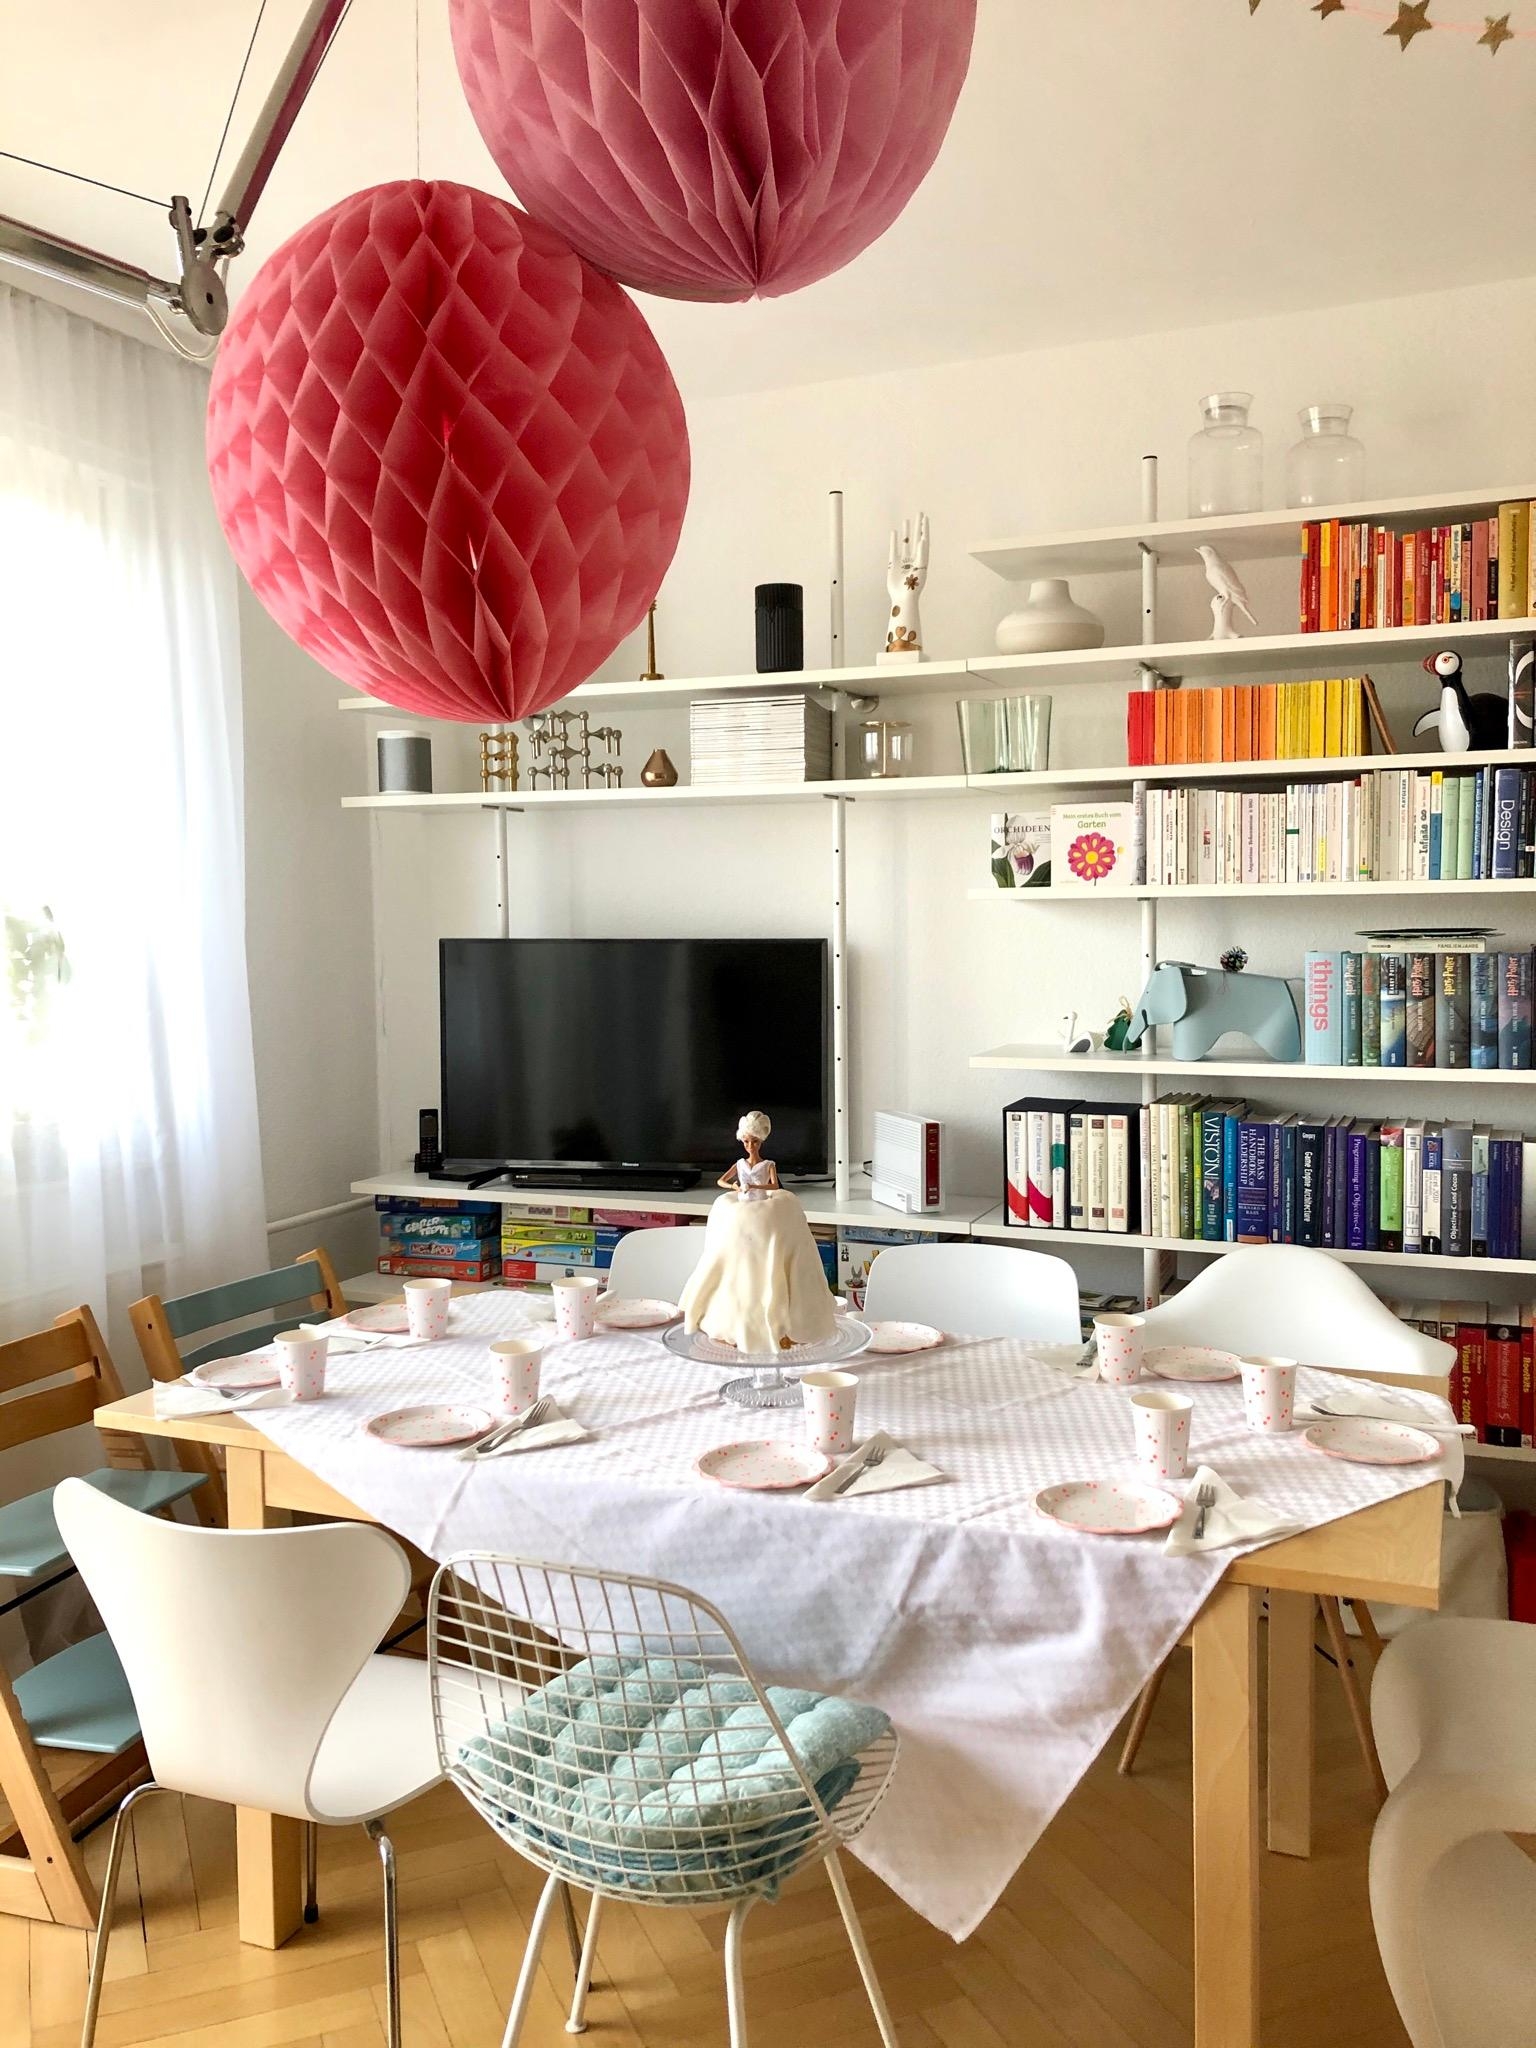 #wohnzimmer #kindergeburtstag #livingchallenge #tischdeko
#vorcorona